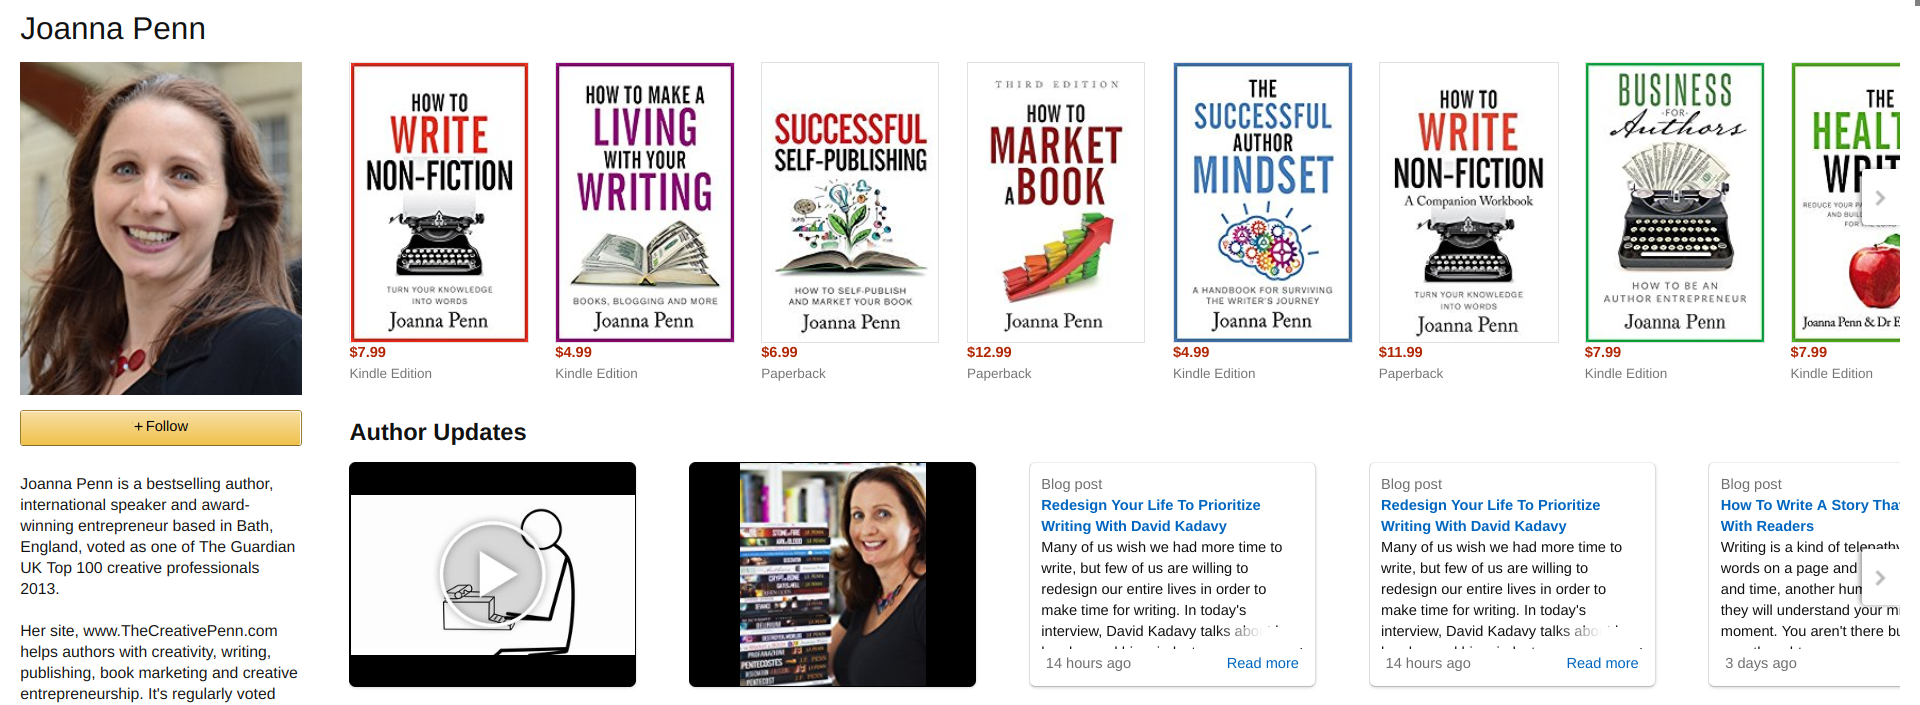 Joanna Penn - Amazon Author Page - kindle direct publishing